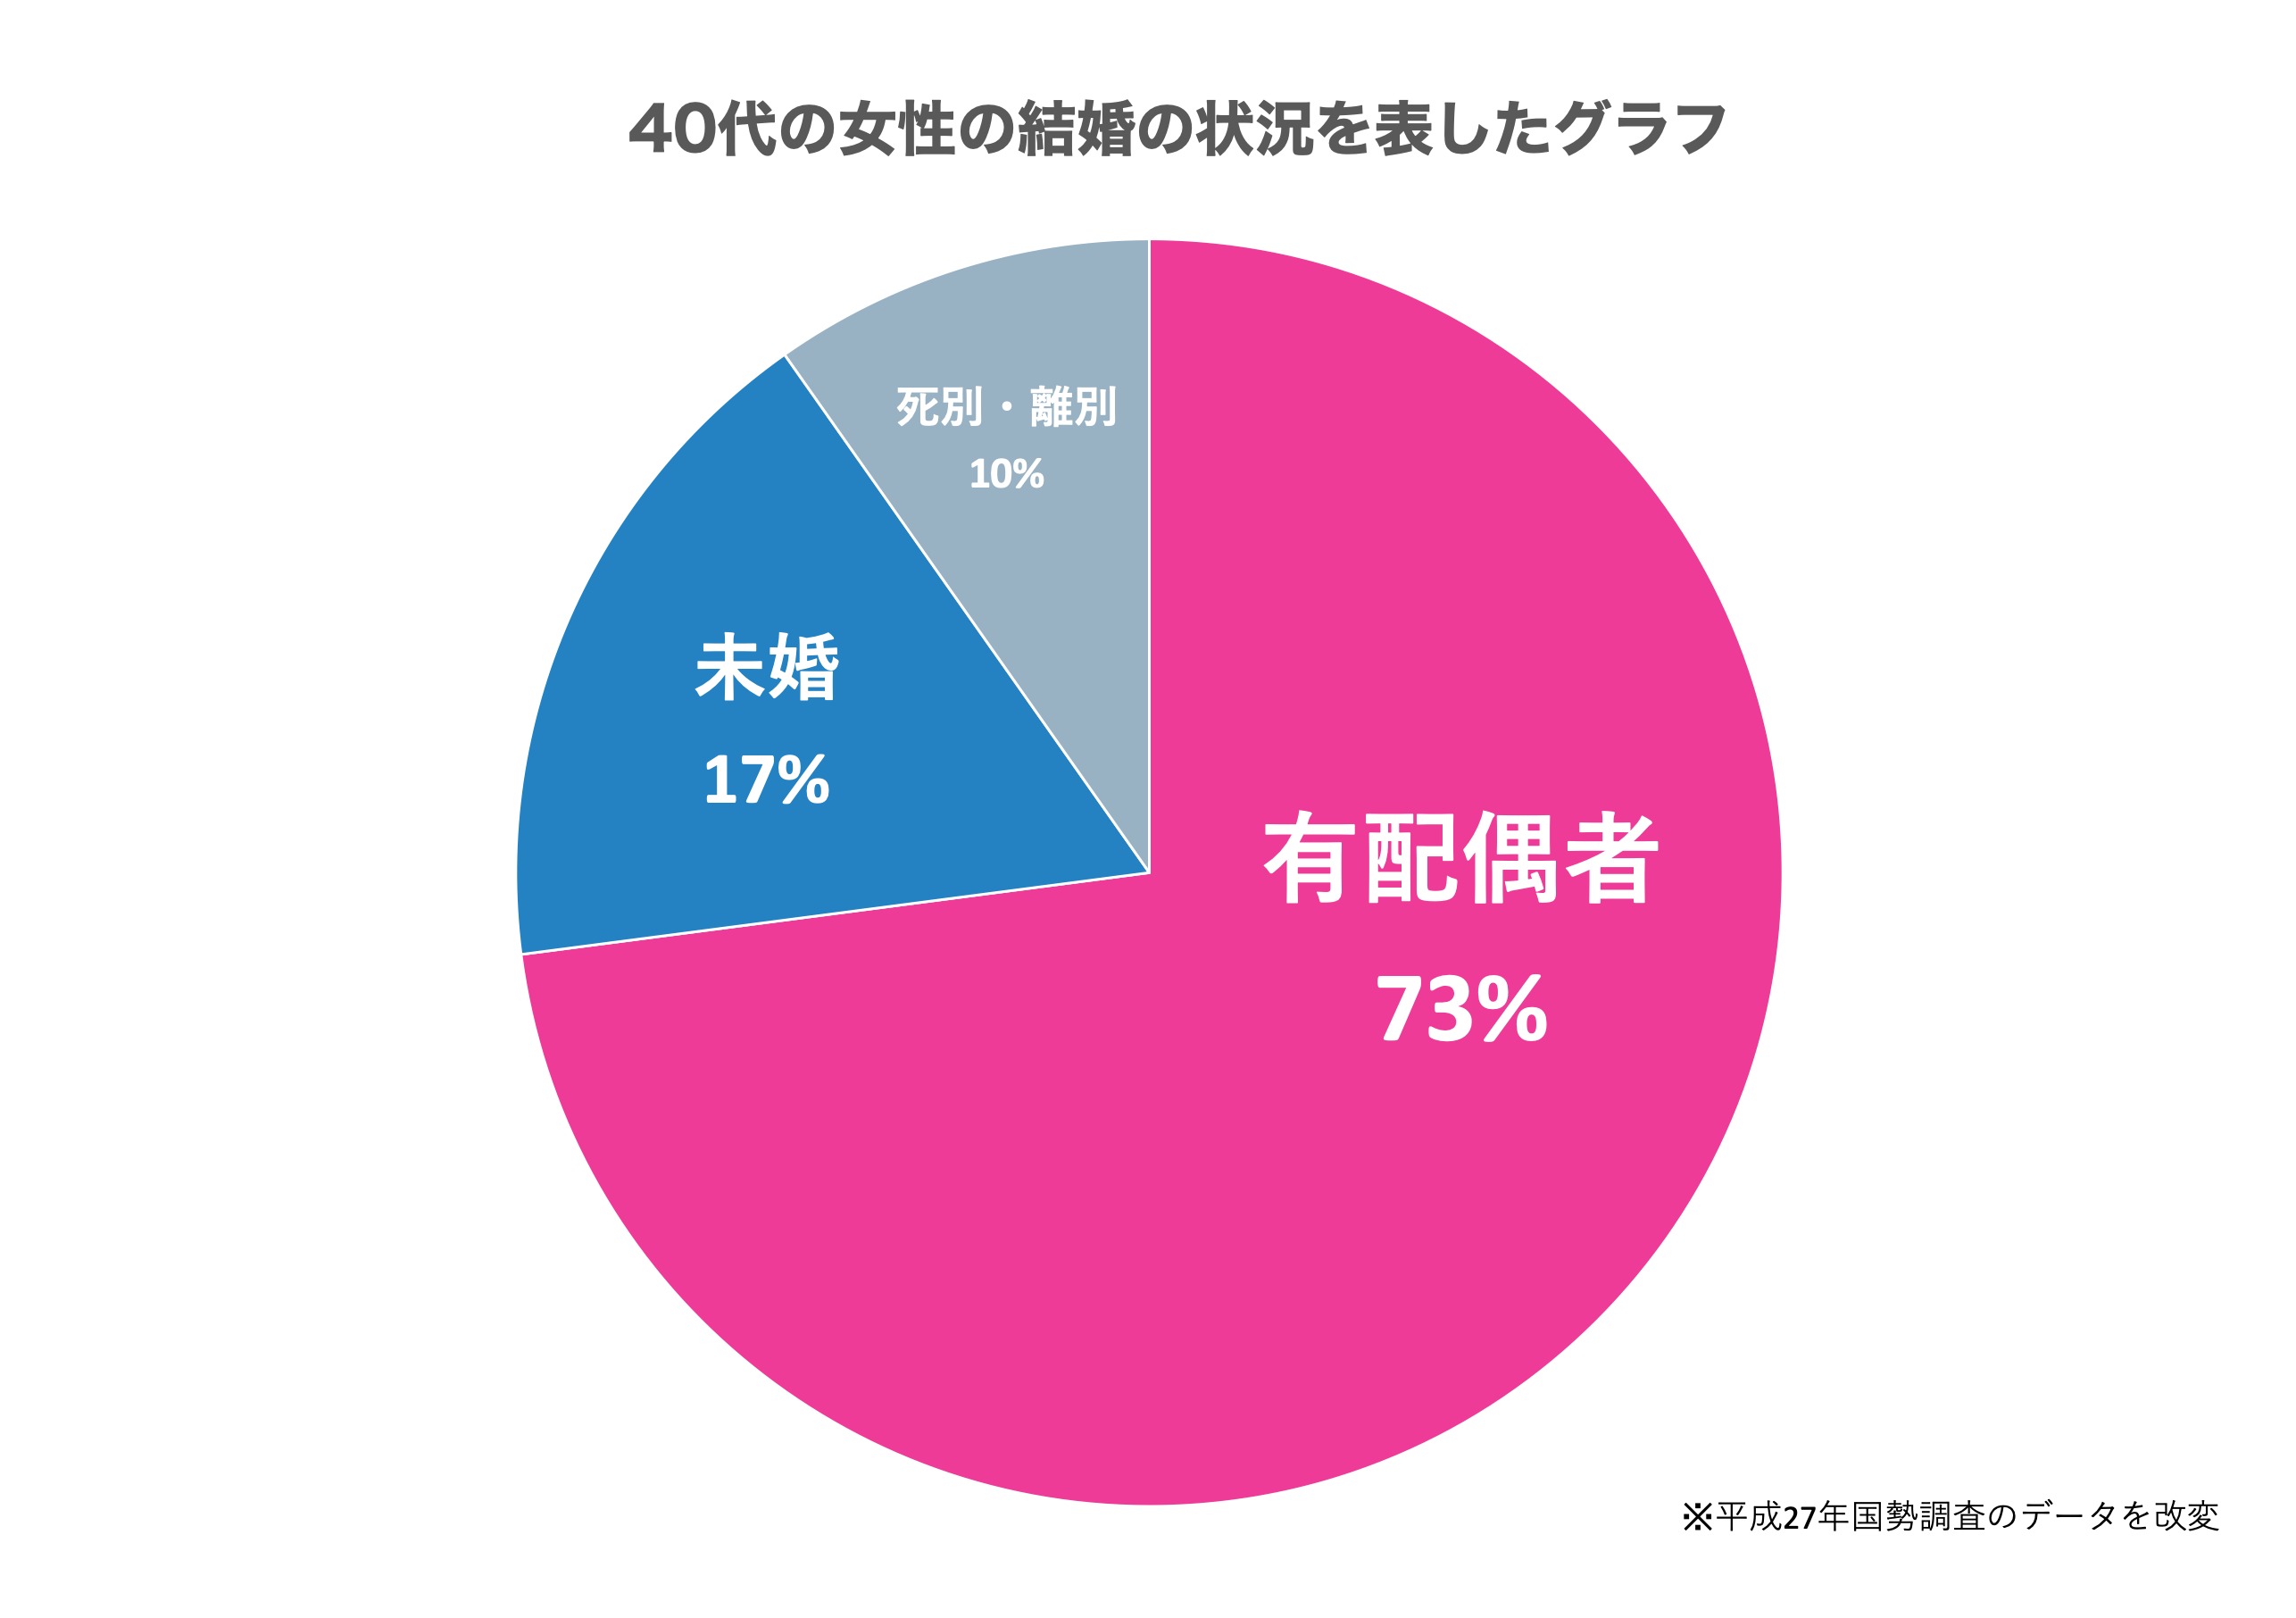 40代の女性の結婚状況を表した円グラフ